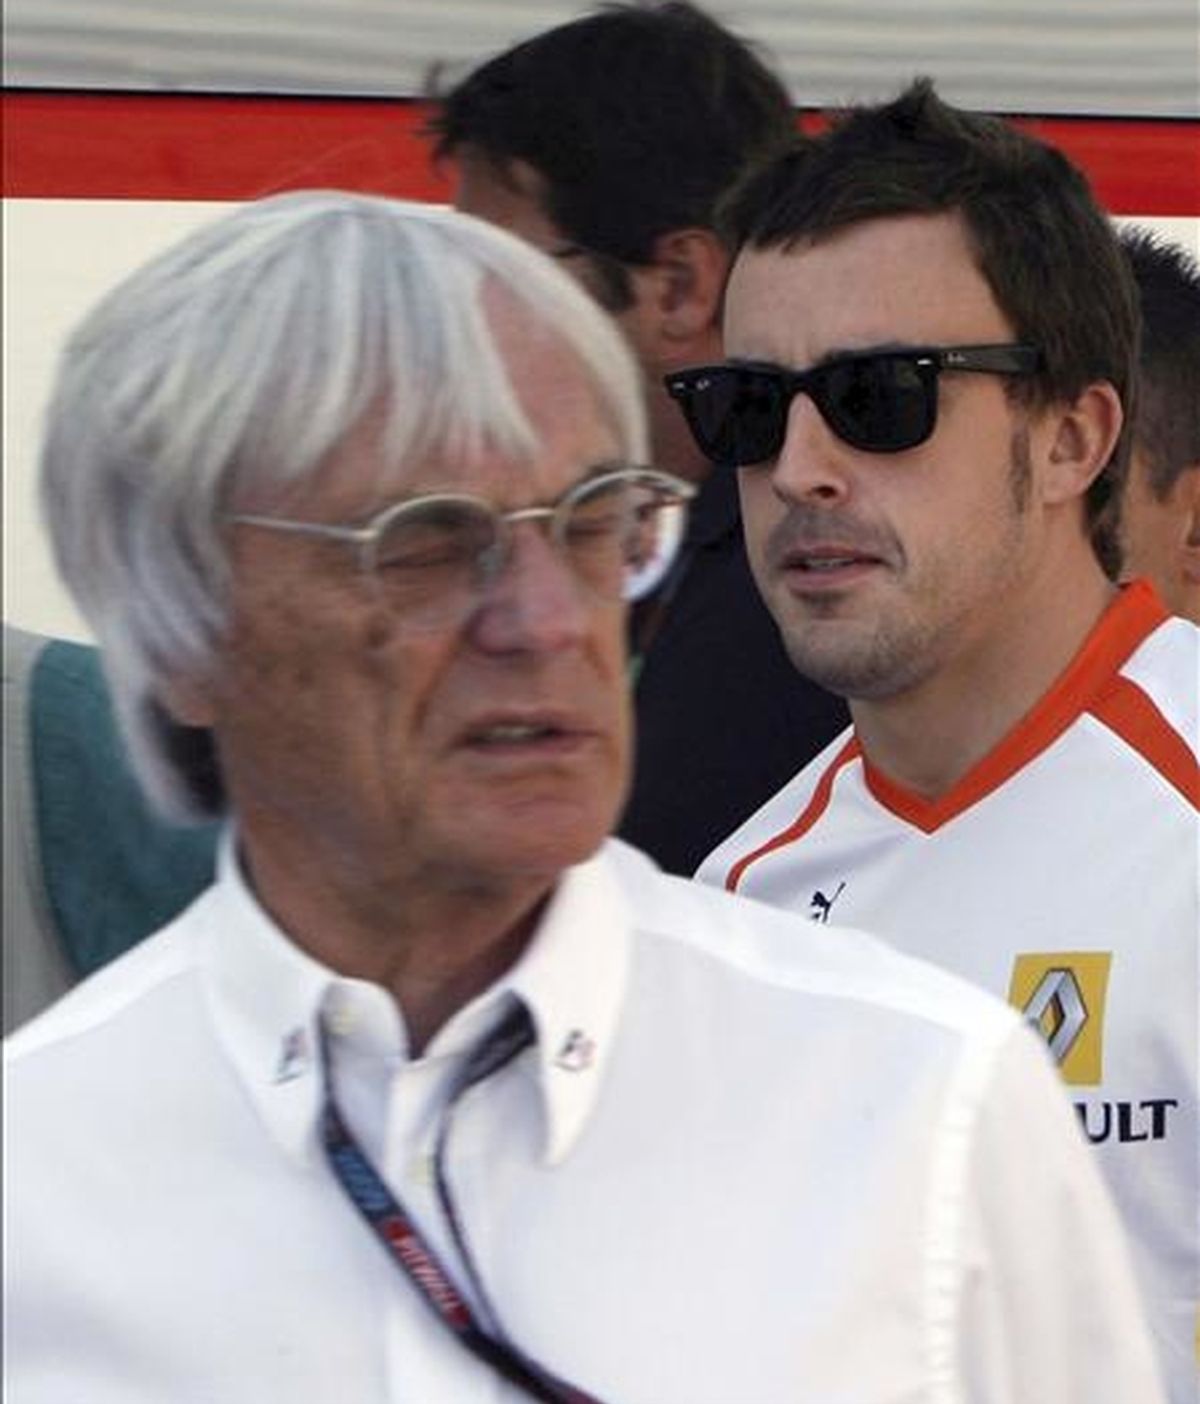 El piloto español Fernando Alonso (d) pasa junto al magnate británico de la F-1 Bernie Eclestone en el circuito ubano de Valencia el 23 de agosto pasado en el Gran Premio de Europa de Fórmula Uno. EFE/Archivo